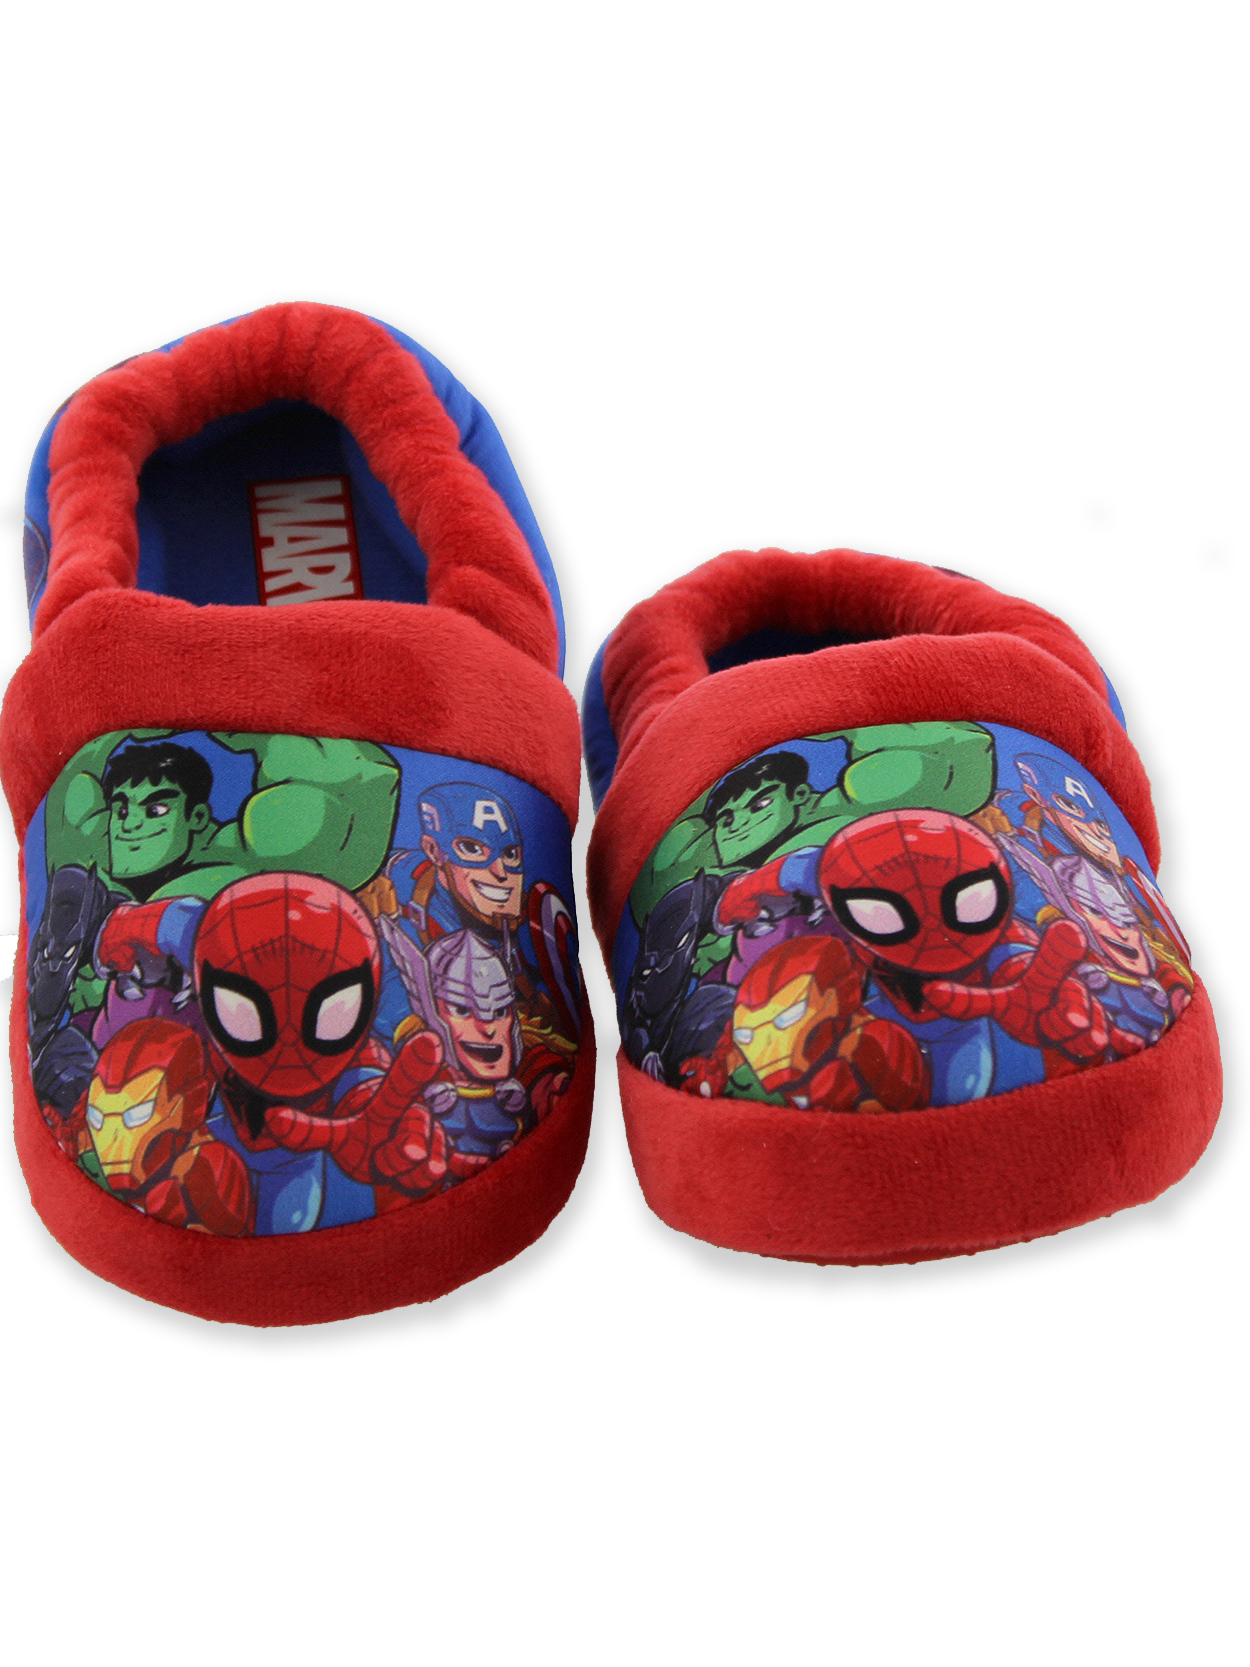 Marvel Super Hero Adventures Avengers Boy's Toddler Plush Aline Slippers AVF227Y - image 2 of 7